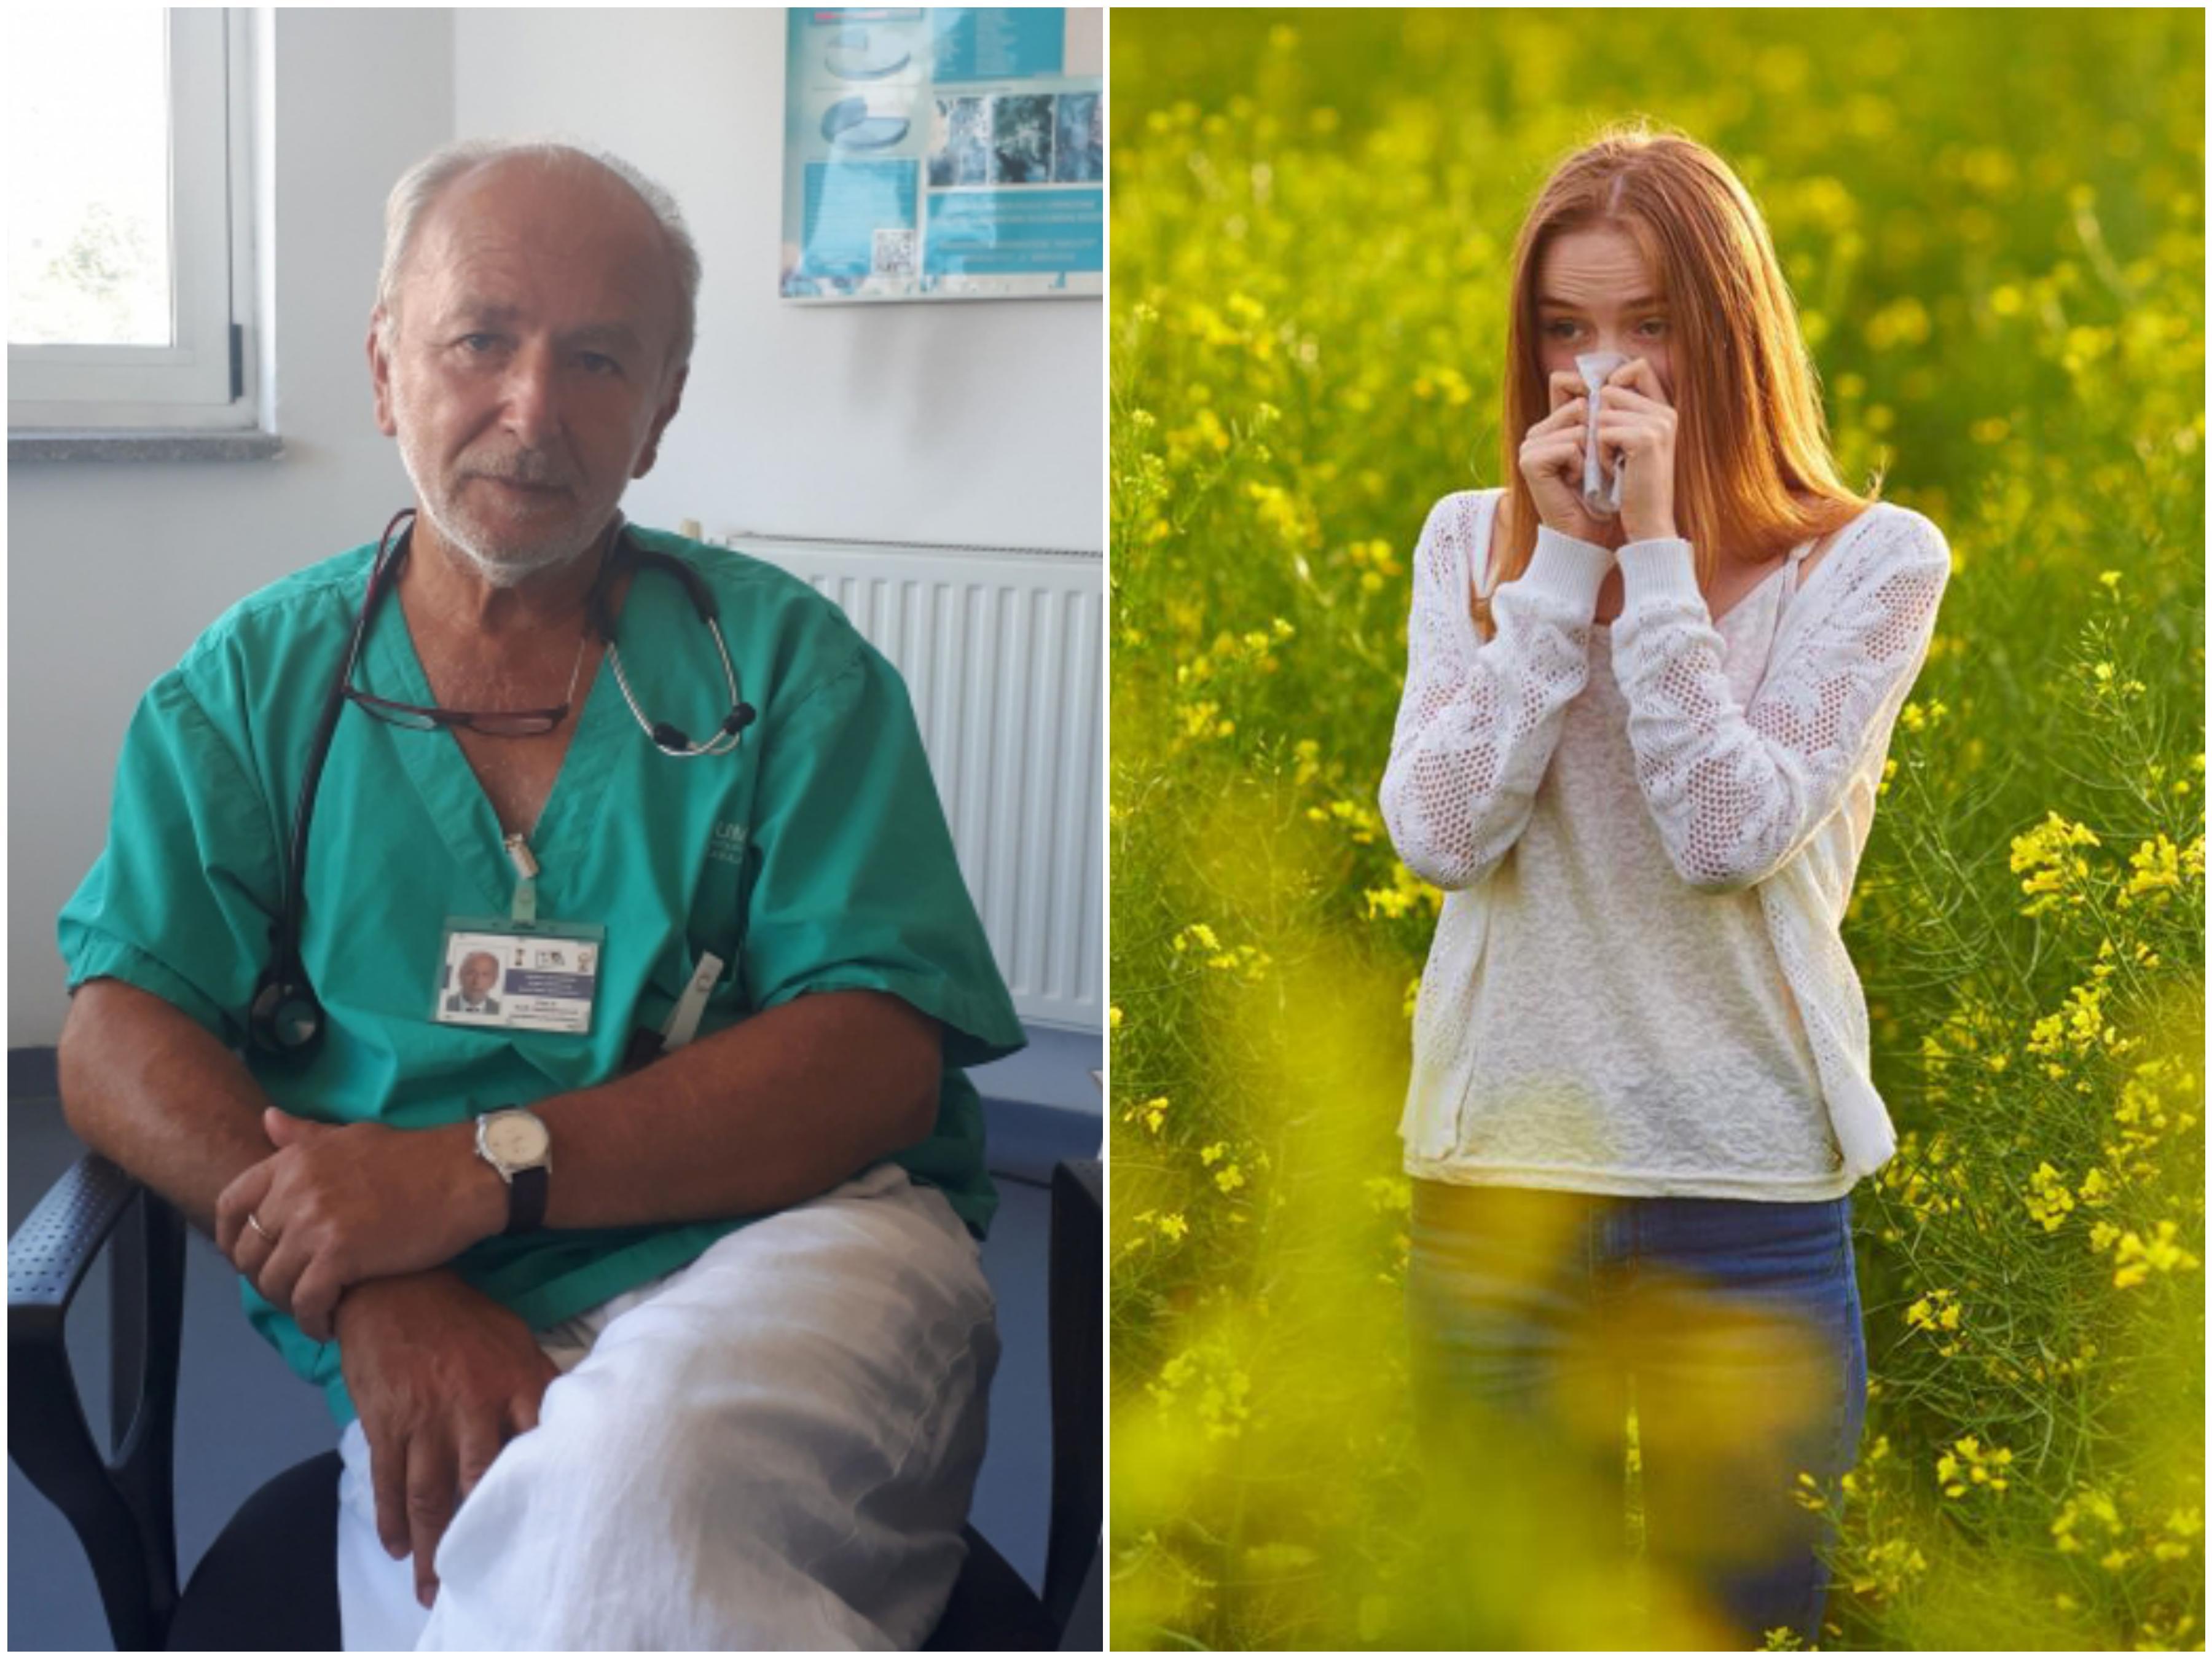 Teufik Hadžiosmanović, alergolog za "Avaz": Alergični na polen trebaju izbjegavati odlazak u prirodu